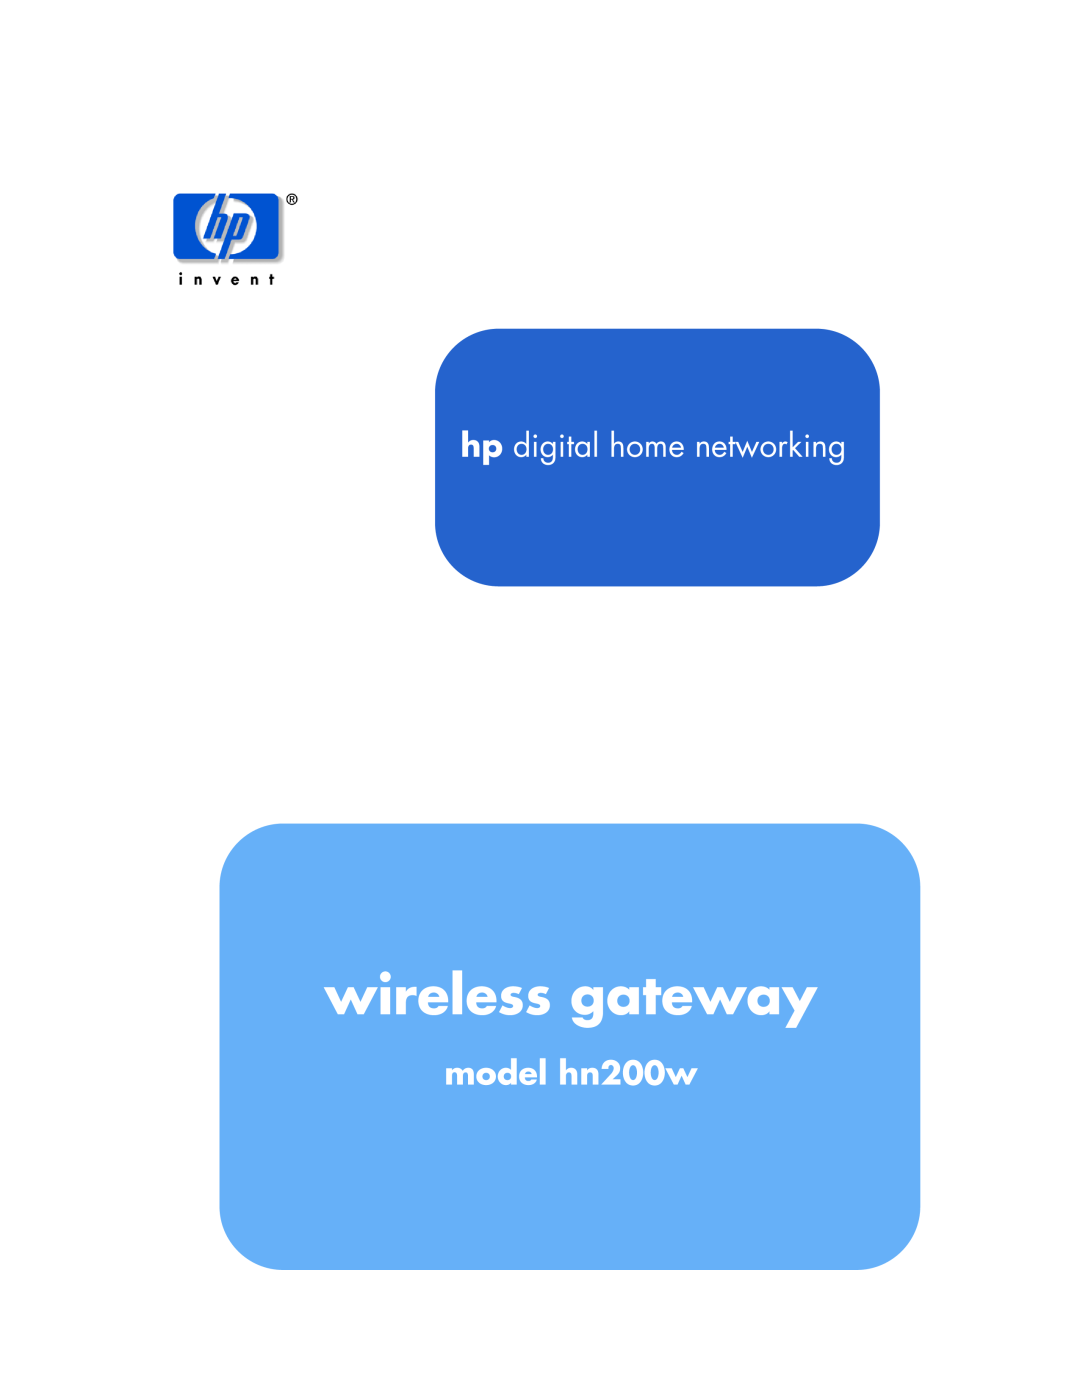 HP manual wireless gateway, hp digital home networking, model hn200w 